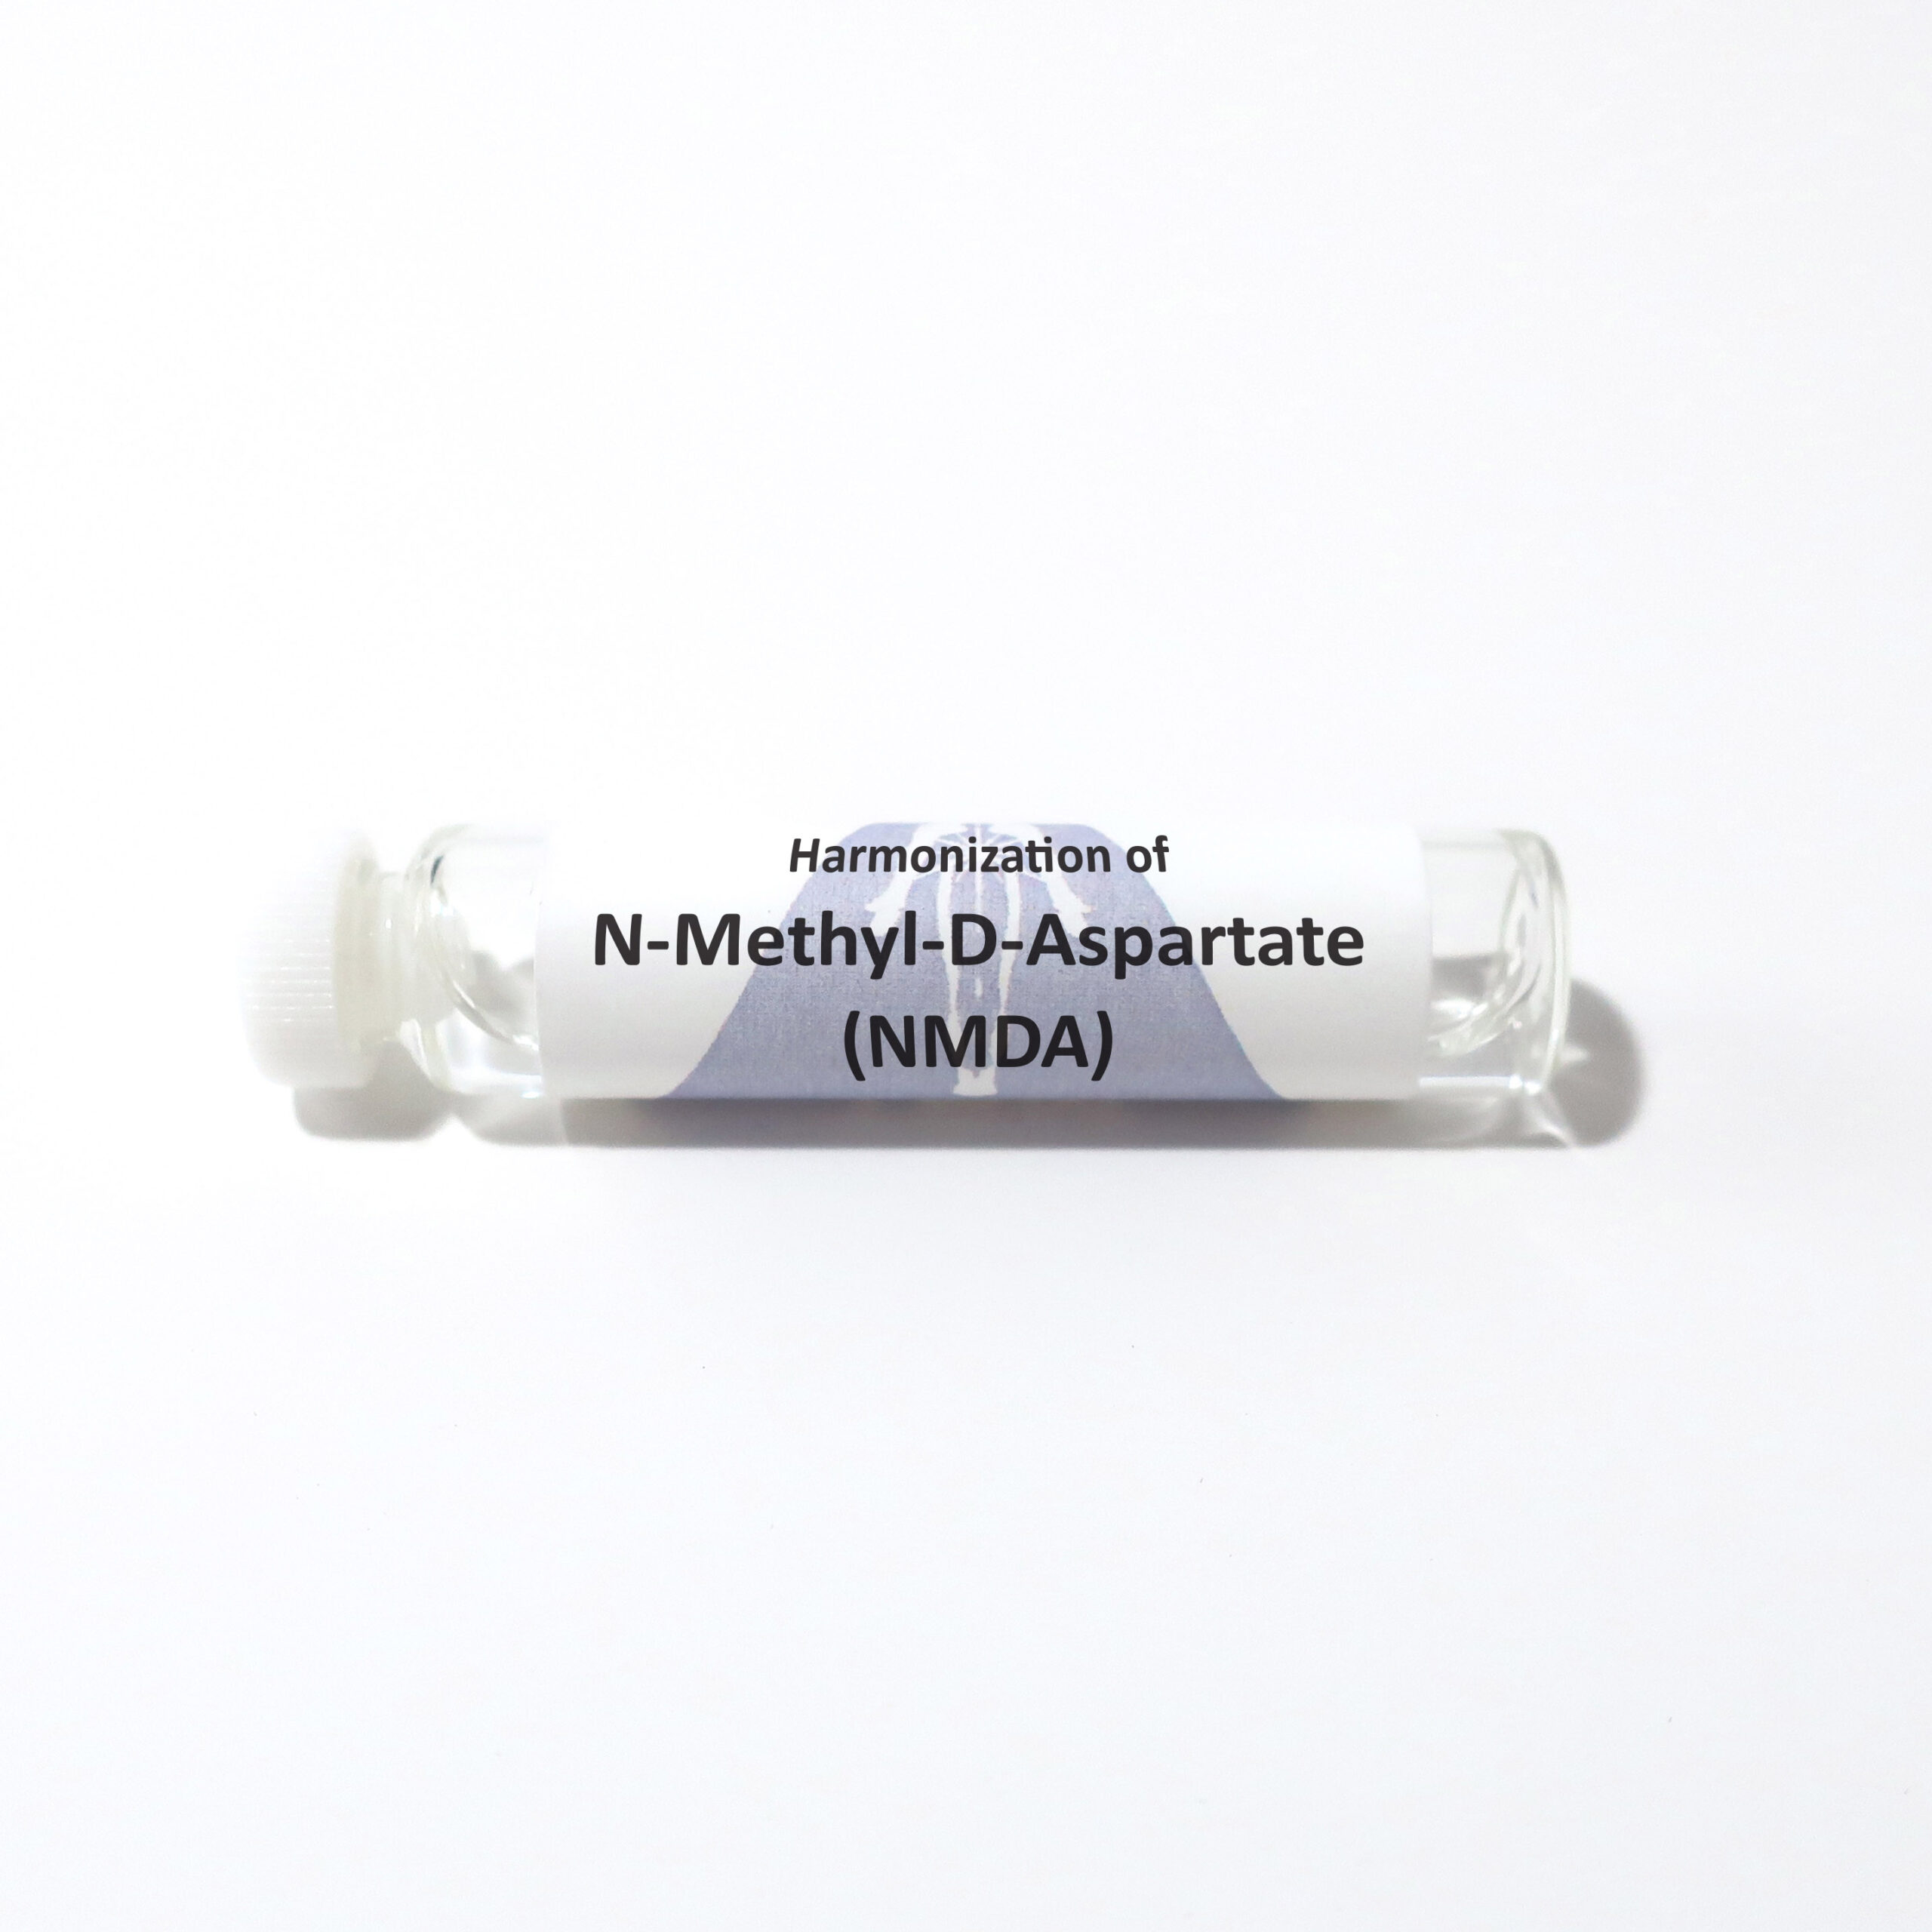 N-Methyl-D-Aspartate (NMDA)